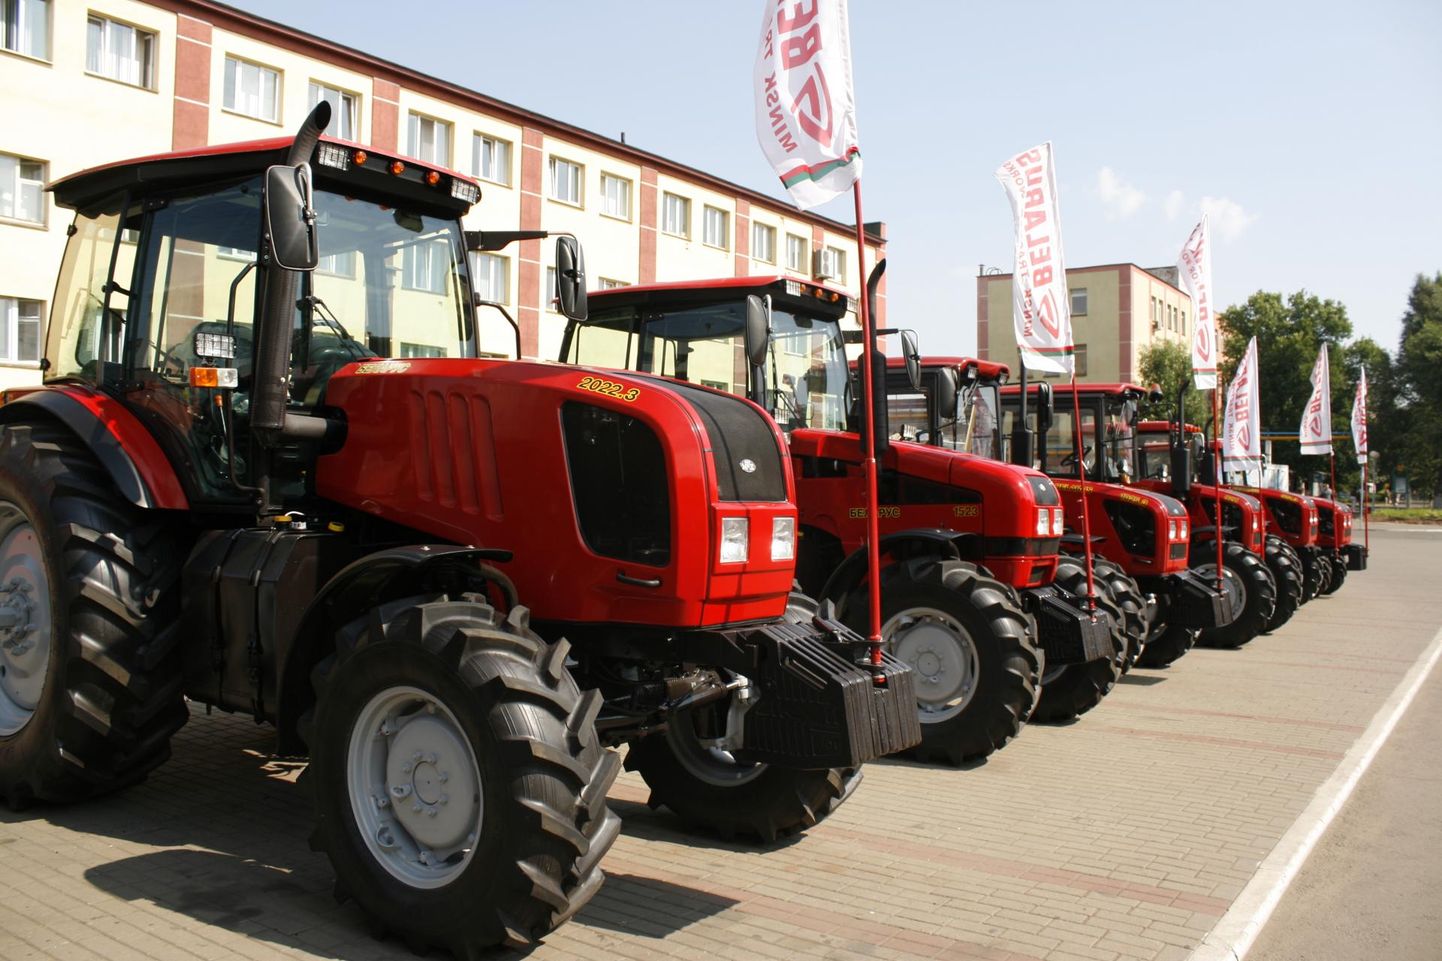 Kuigi uusi Belarusse jõuab meie põldudele üha vähem, on neid siinmail kasutuses veel tuhandeid. Sestap vajavad ­põllumehed jätkuvalt Minski traktori­tehase ametlikku esindajat Eestis.